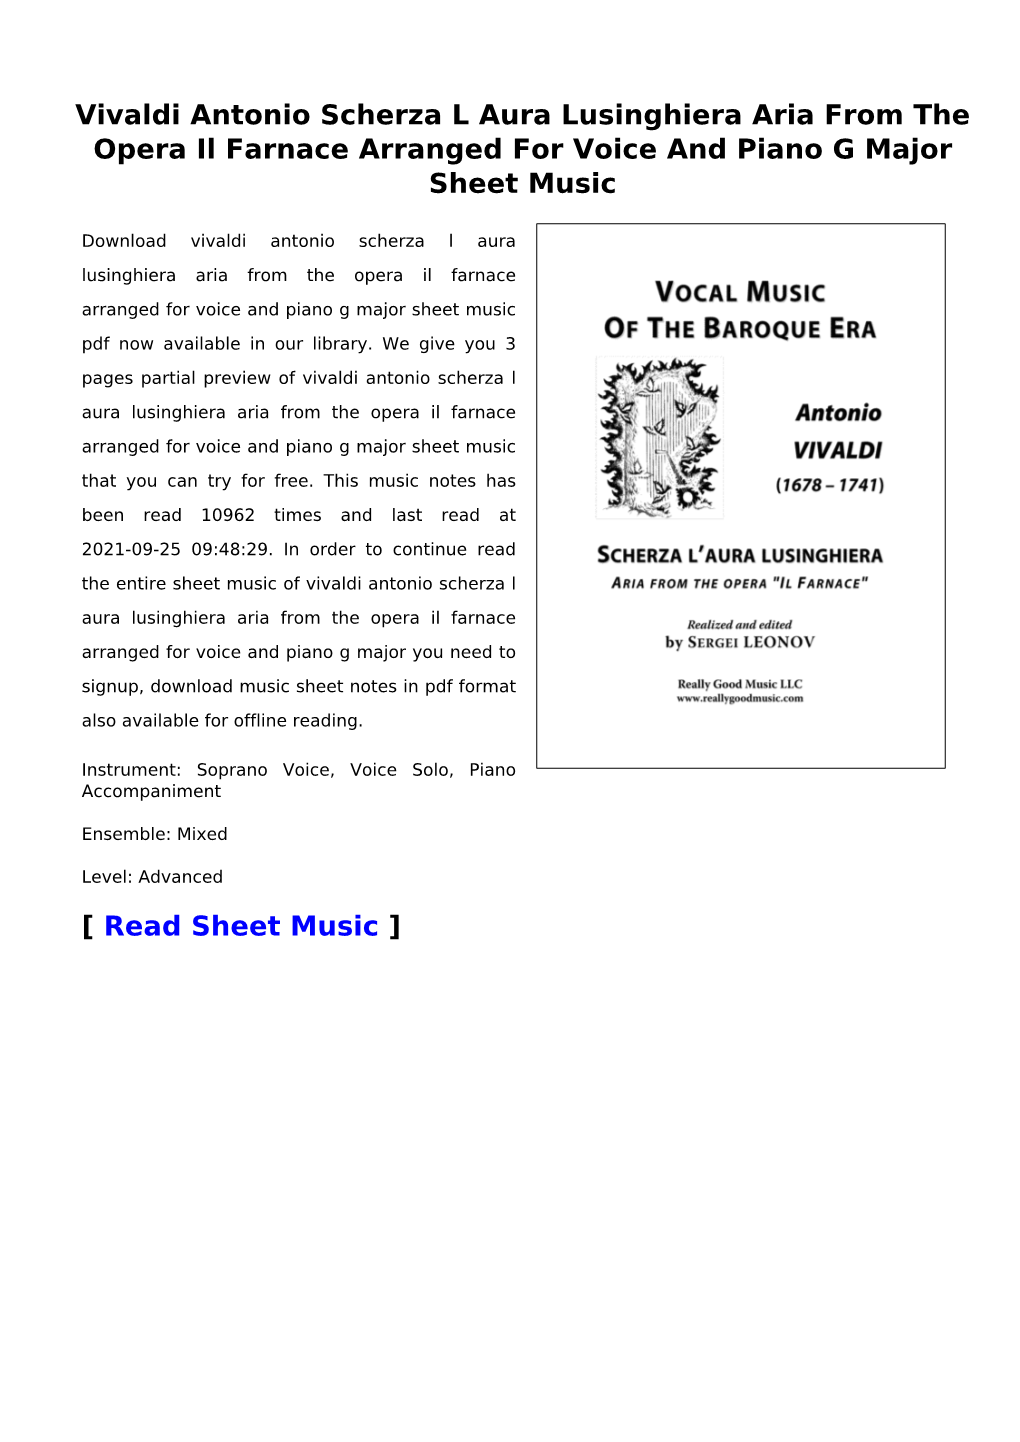 Vivaldi Antonio Scherza L Aura Lusinghiera Aria from the Opera Il Farnace Arranged for Voice and Piano G Major Sheet Music